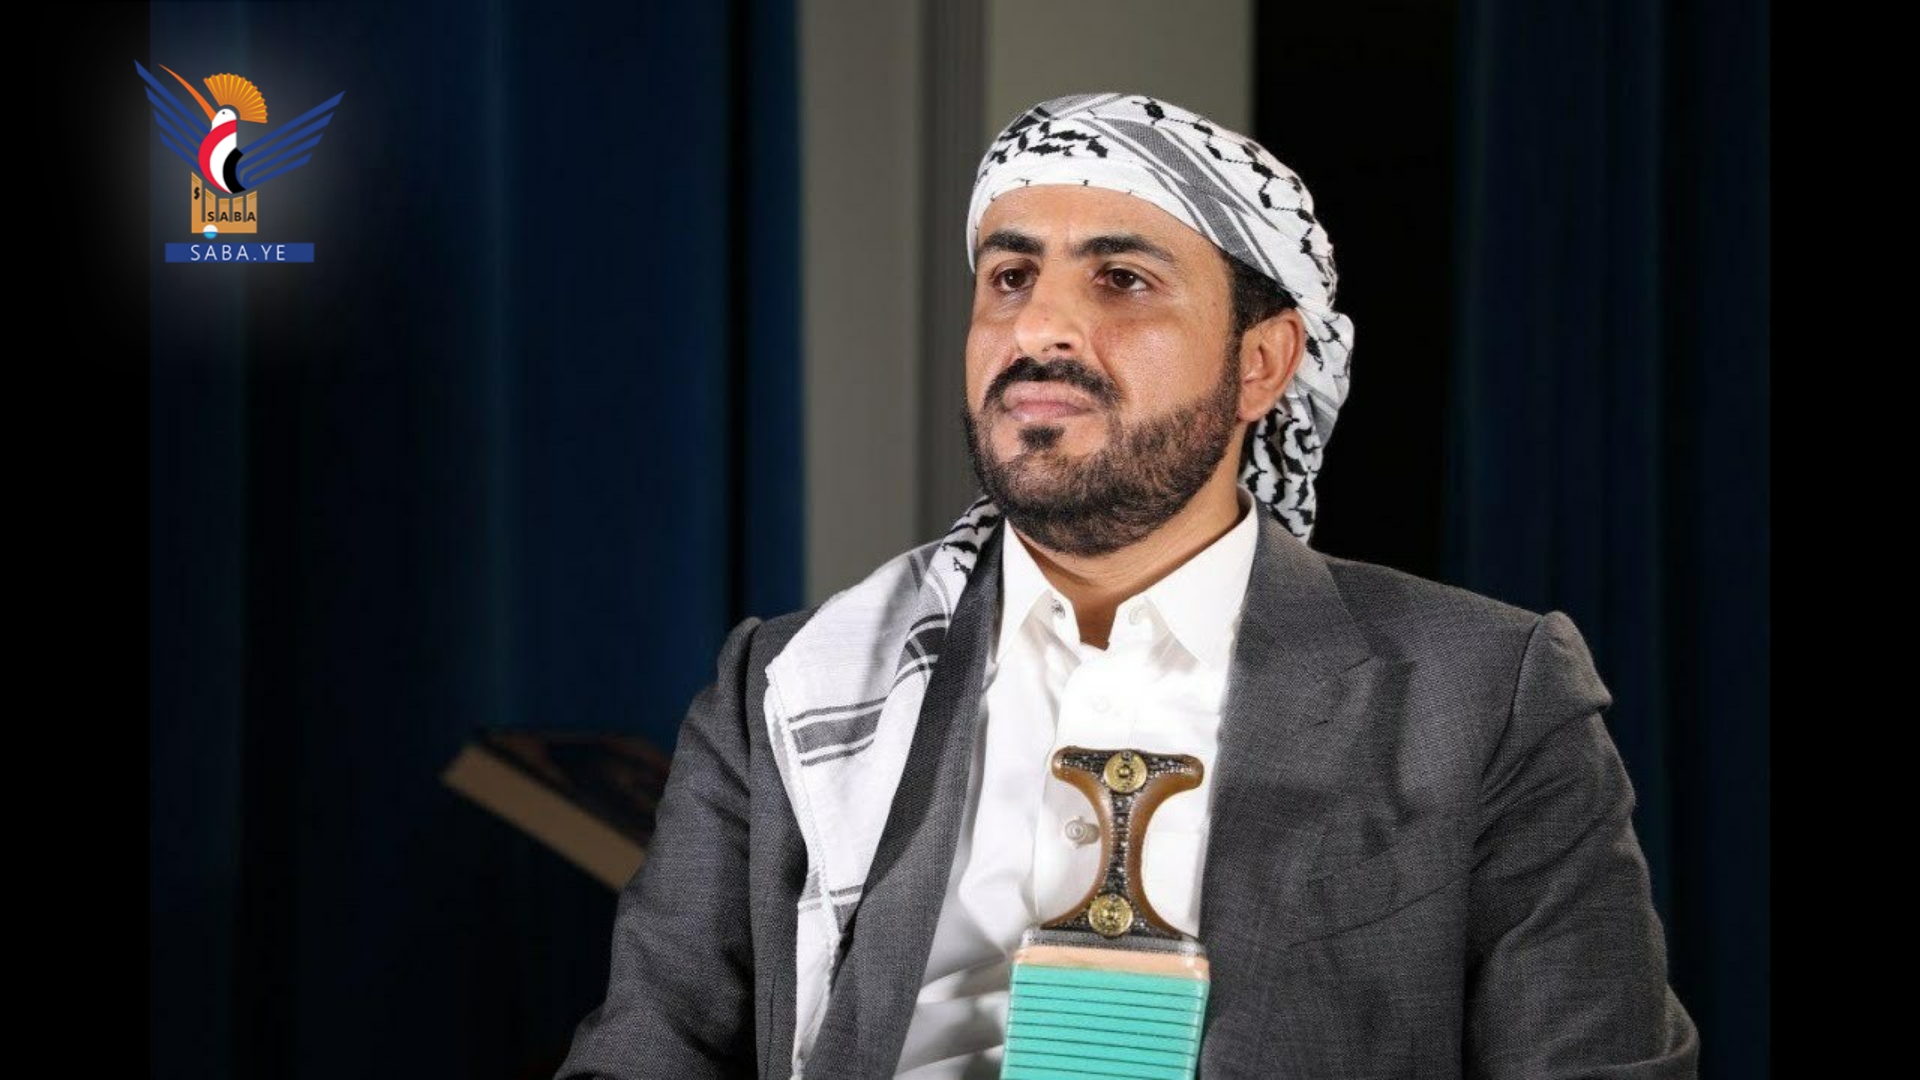 محمد عبدالسلام: الموقف اليمني تجاه فلسطين نابع من مبدأ ديني وقومي وأخلاقي